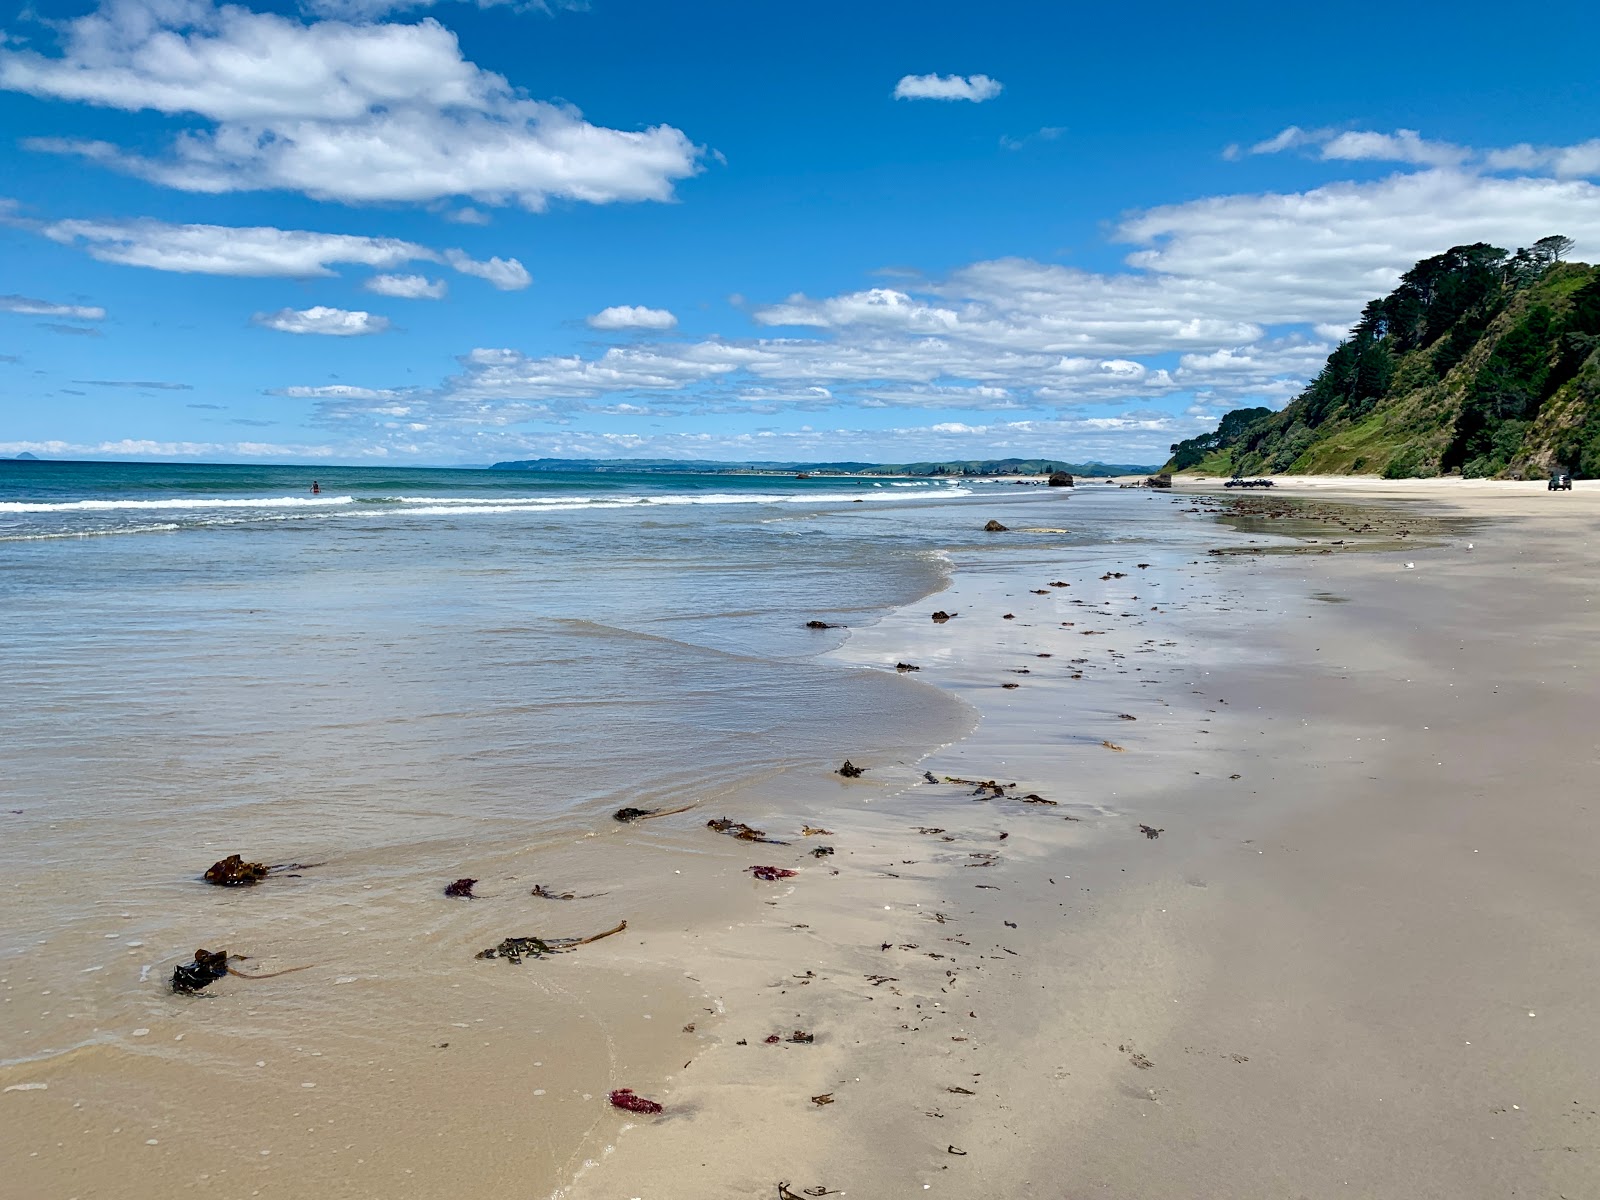 Fotografie cu Newdicks Beach - locul popular printre cunoscătorii de relaxare